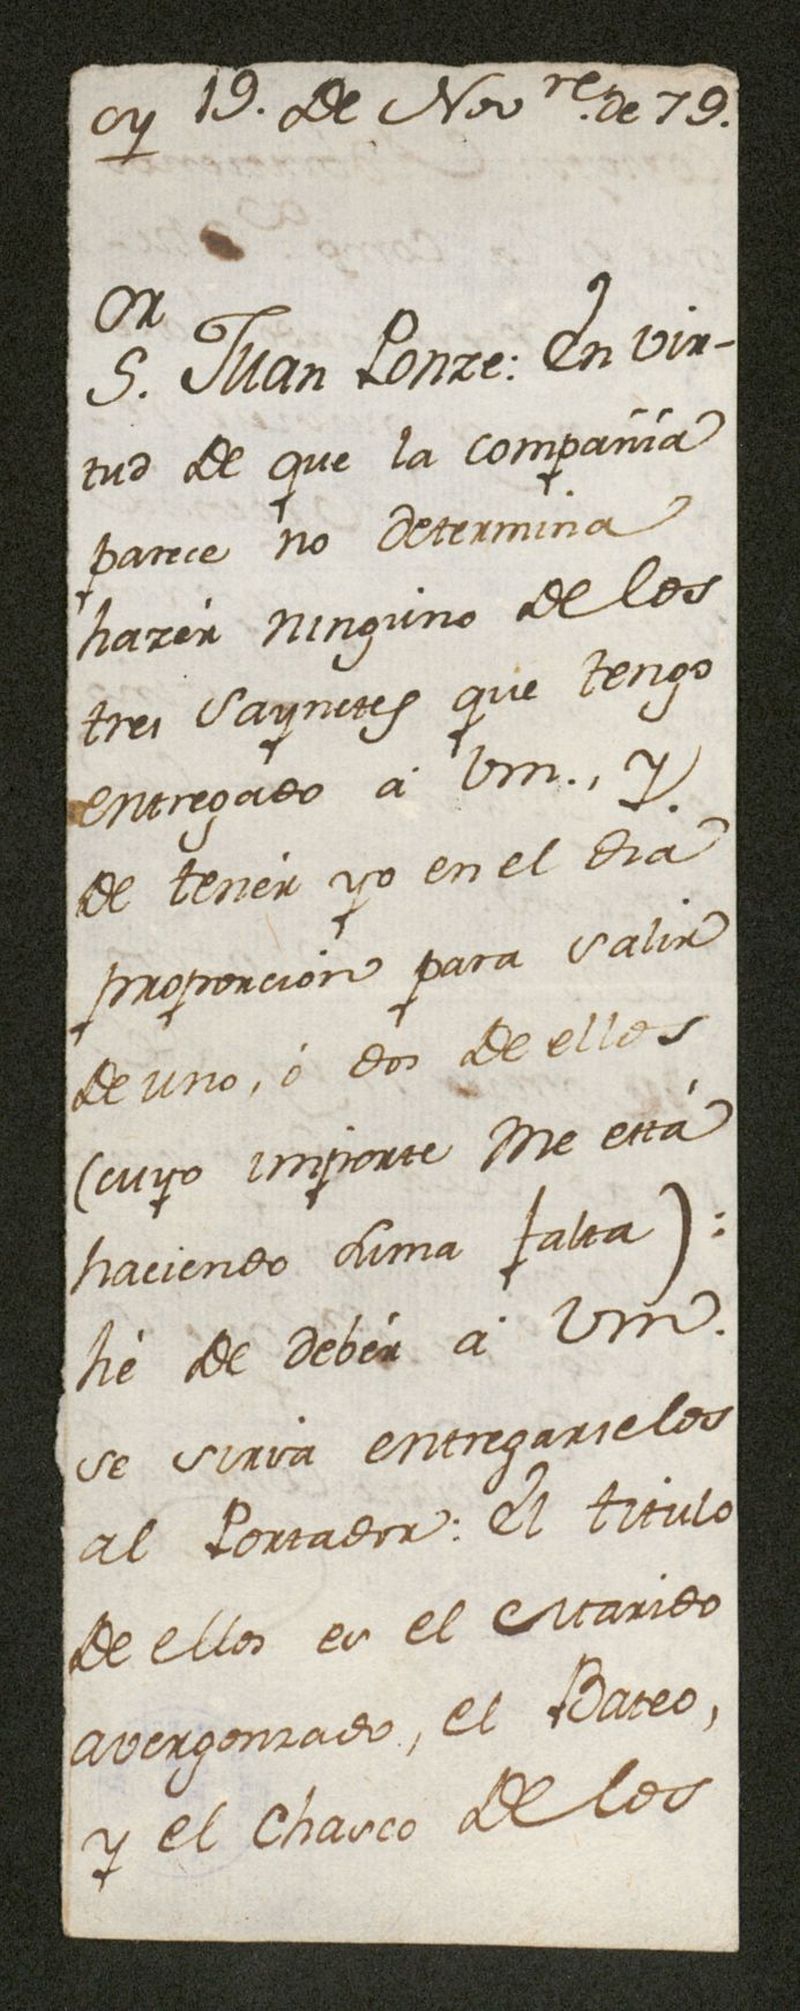 [Carta], 1779 nov. 19, [s.l.] a Juan Ponze